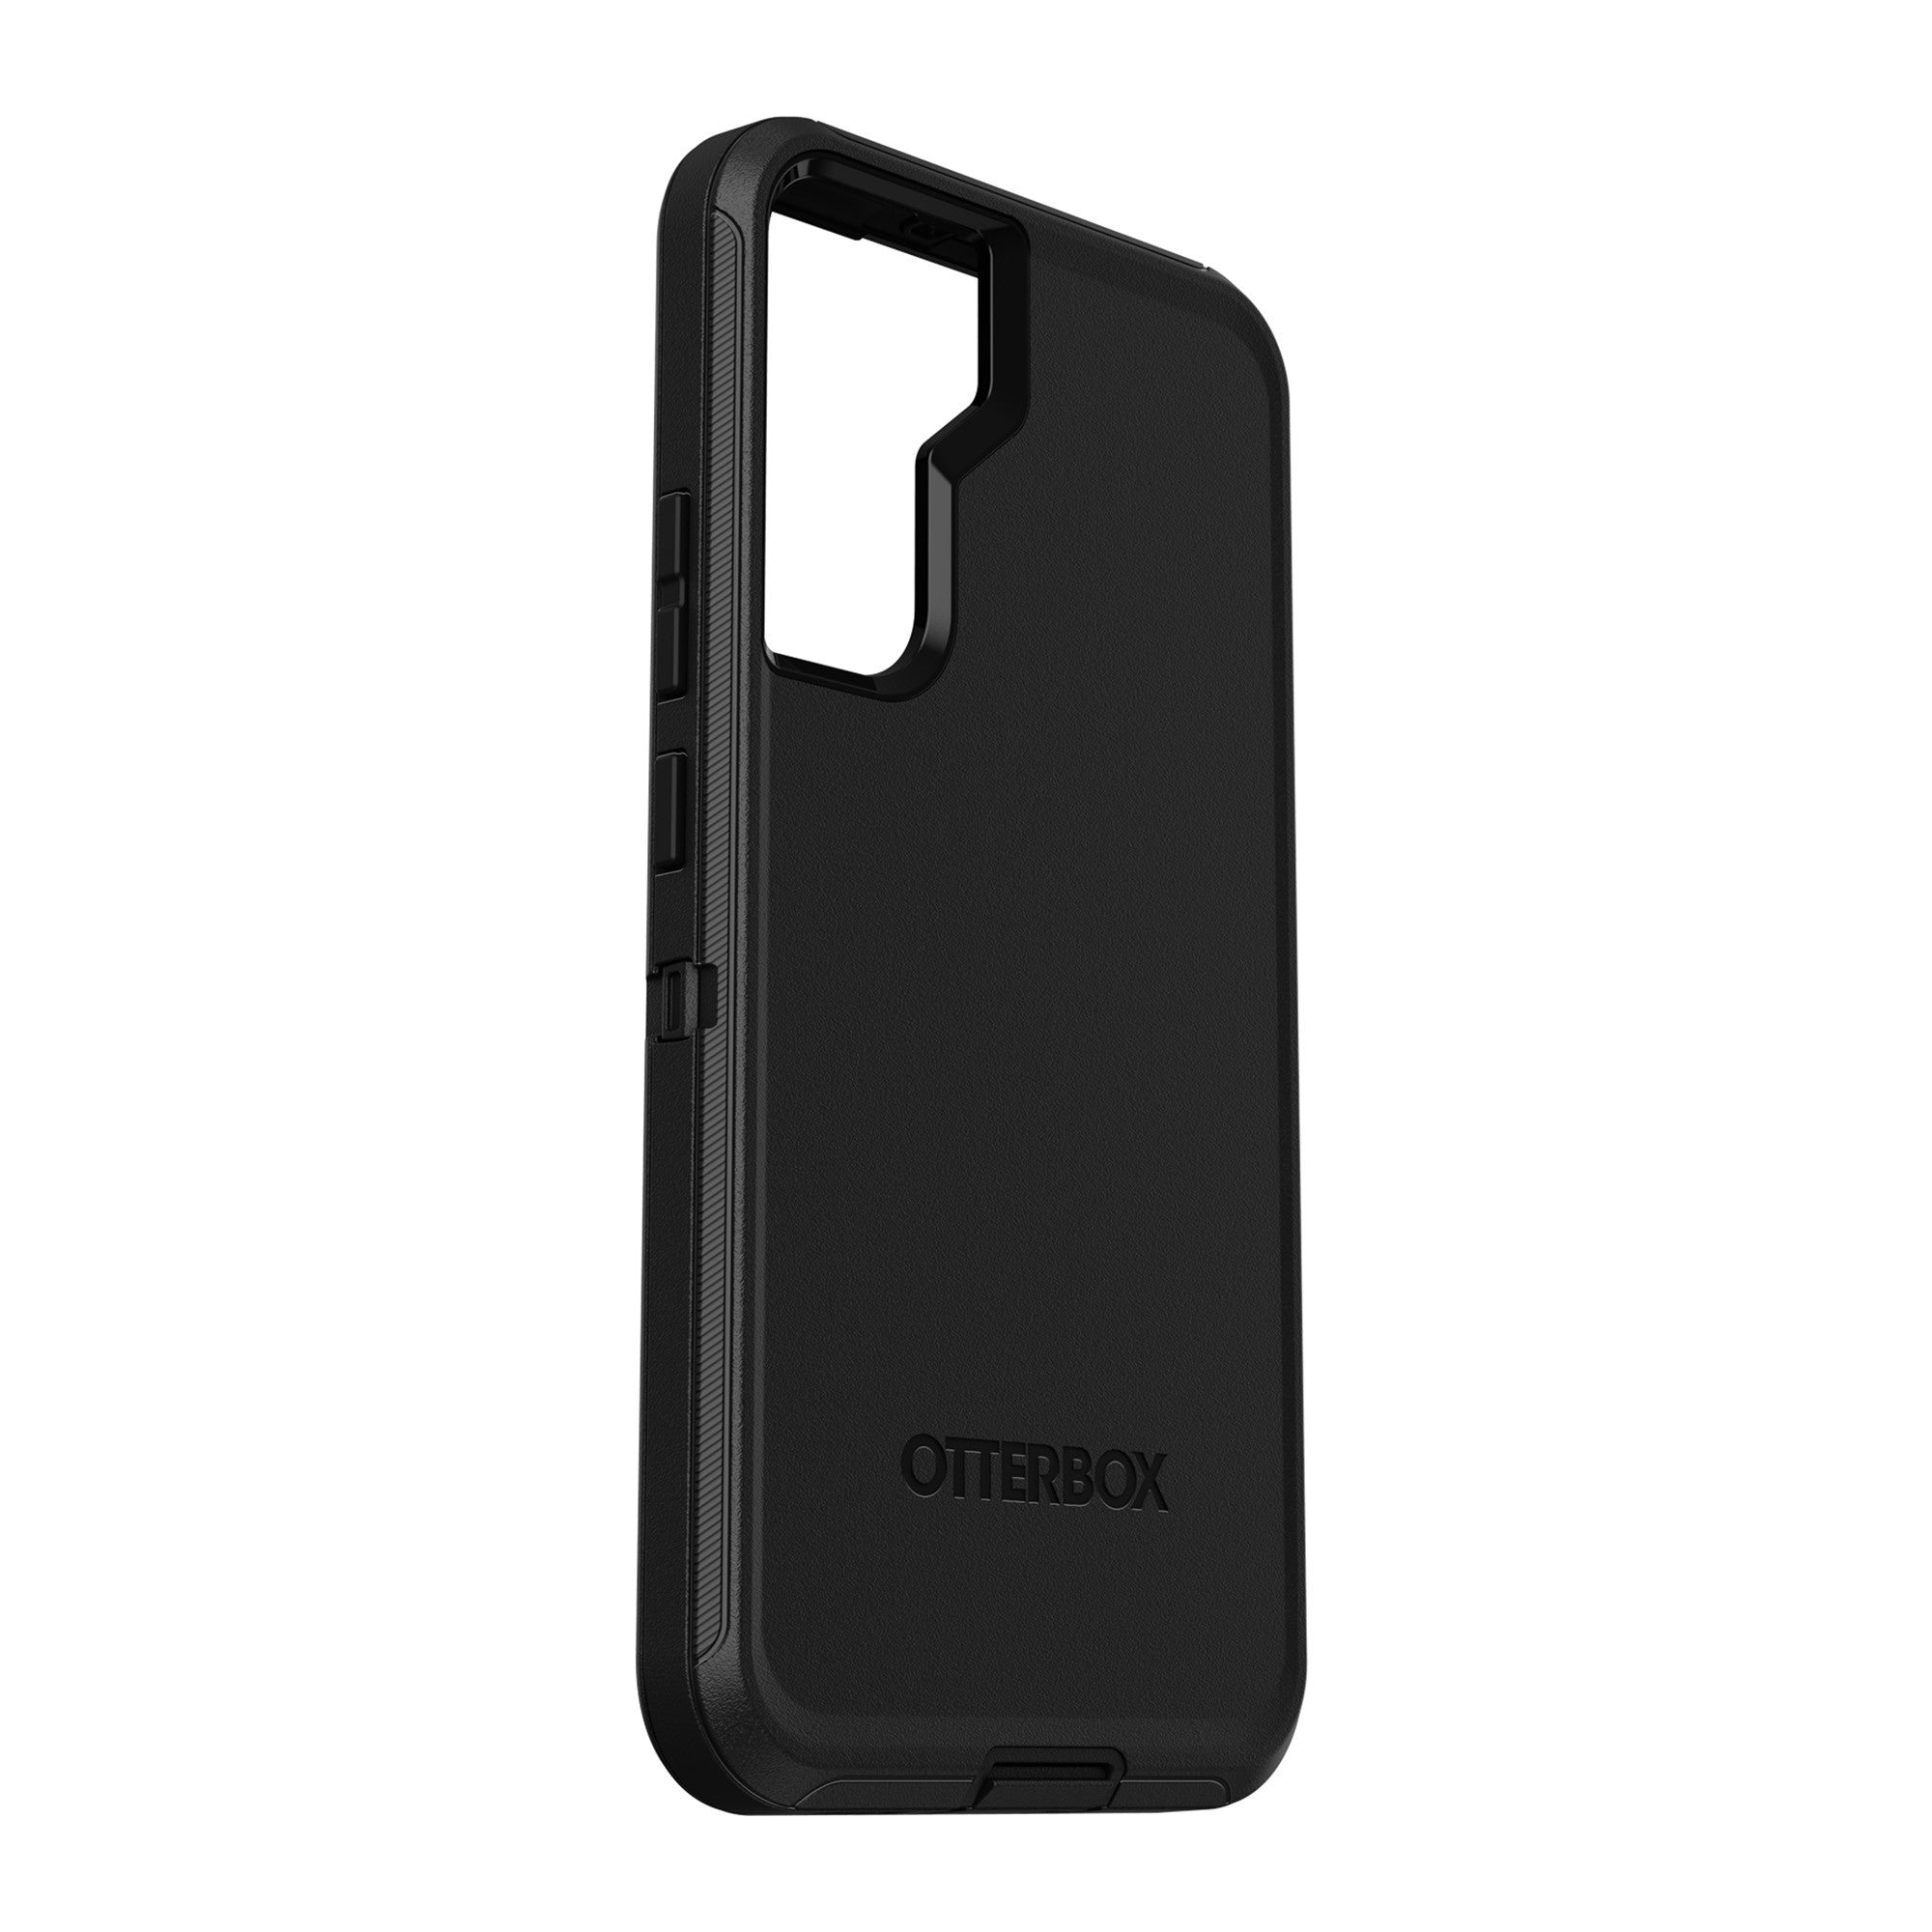 Samsung Galaxy S22 5G Otterbox Defender Series Case - Black - 15-09543